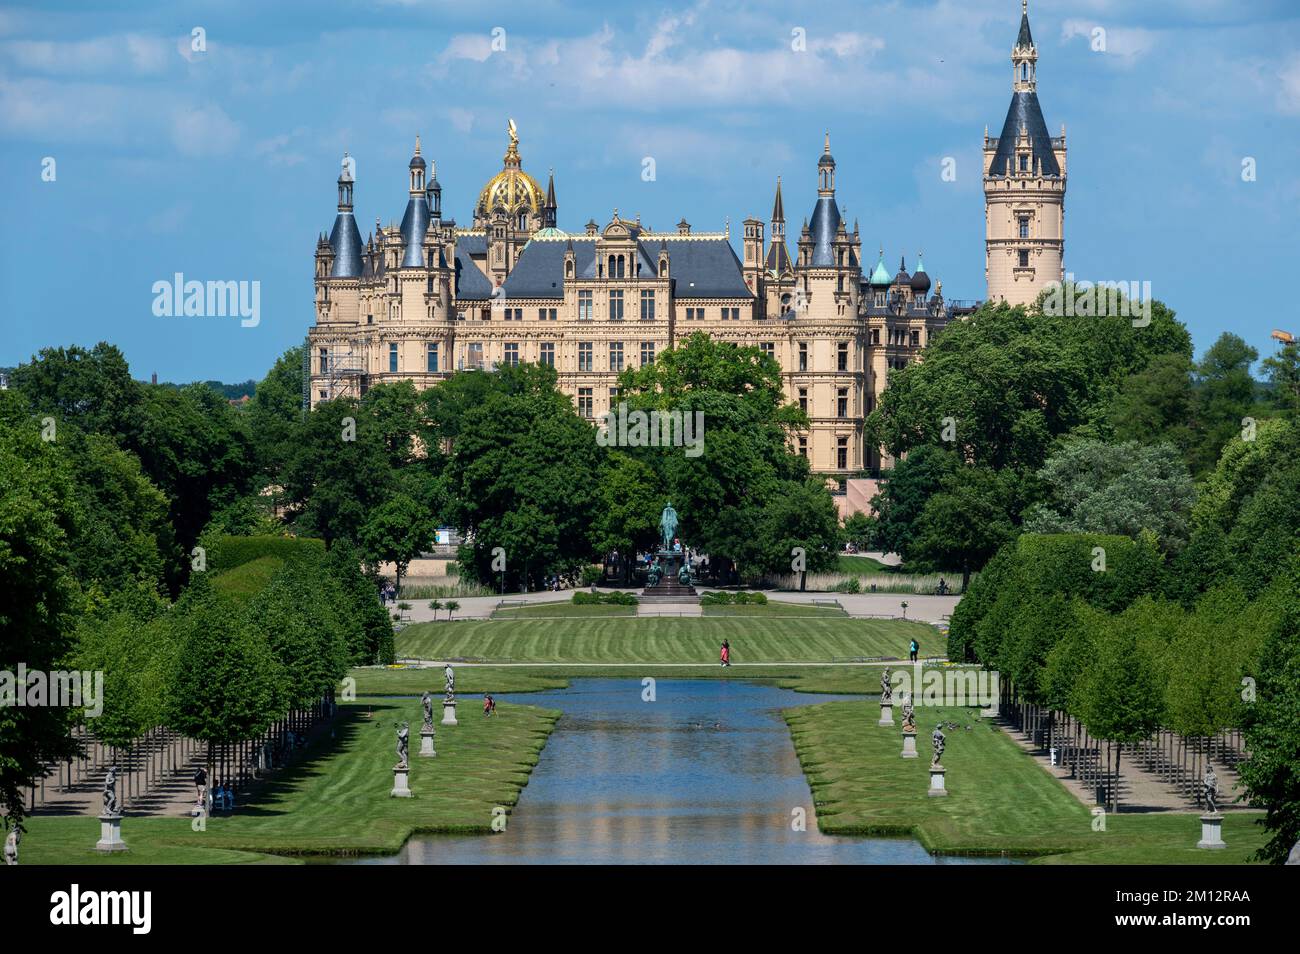 Germania, Meclemburgo-Pomerania occidentale, capitale dello stato Schwerin, castello di Schwerin, giardino del castello con canale trasversale Foto Stock